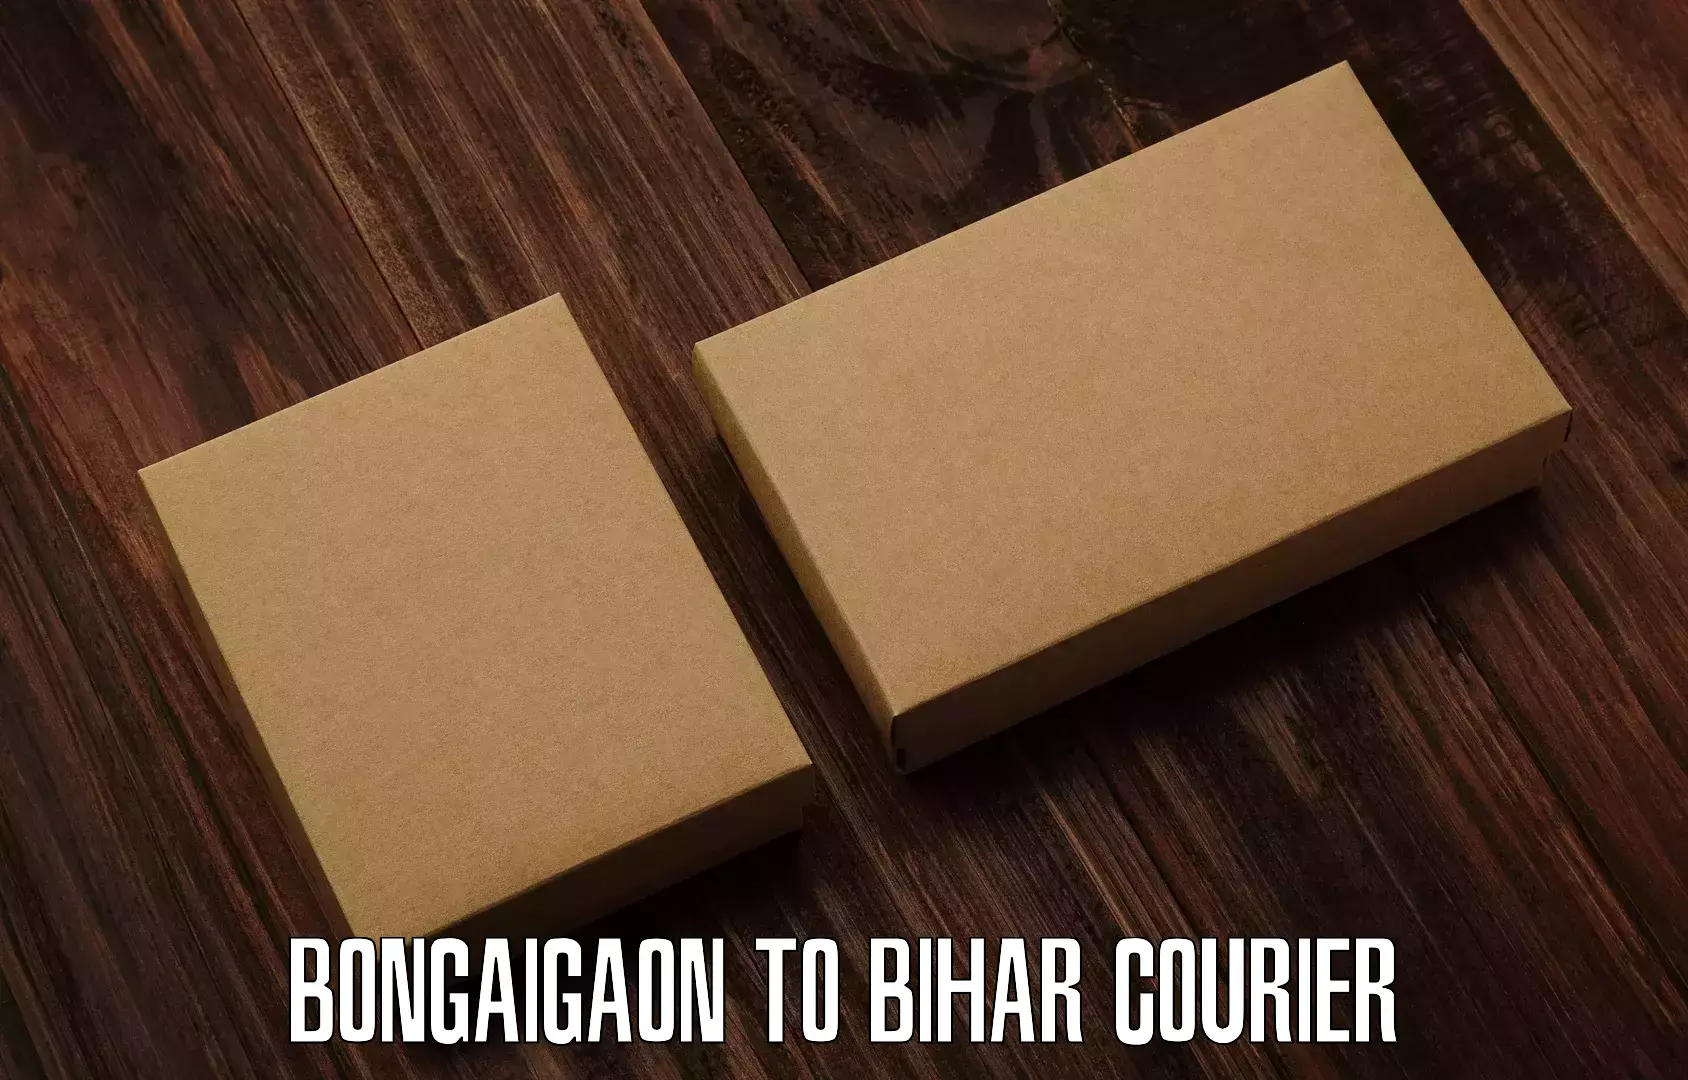 Next-generation courier services Bongaigaon to Parsauni